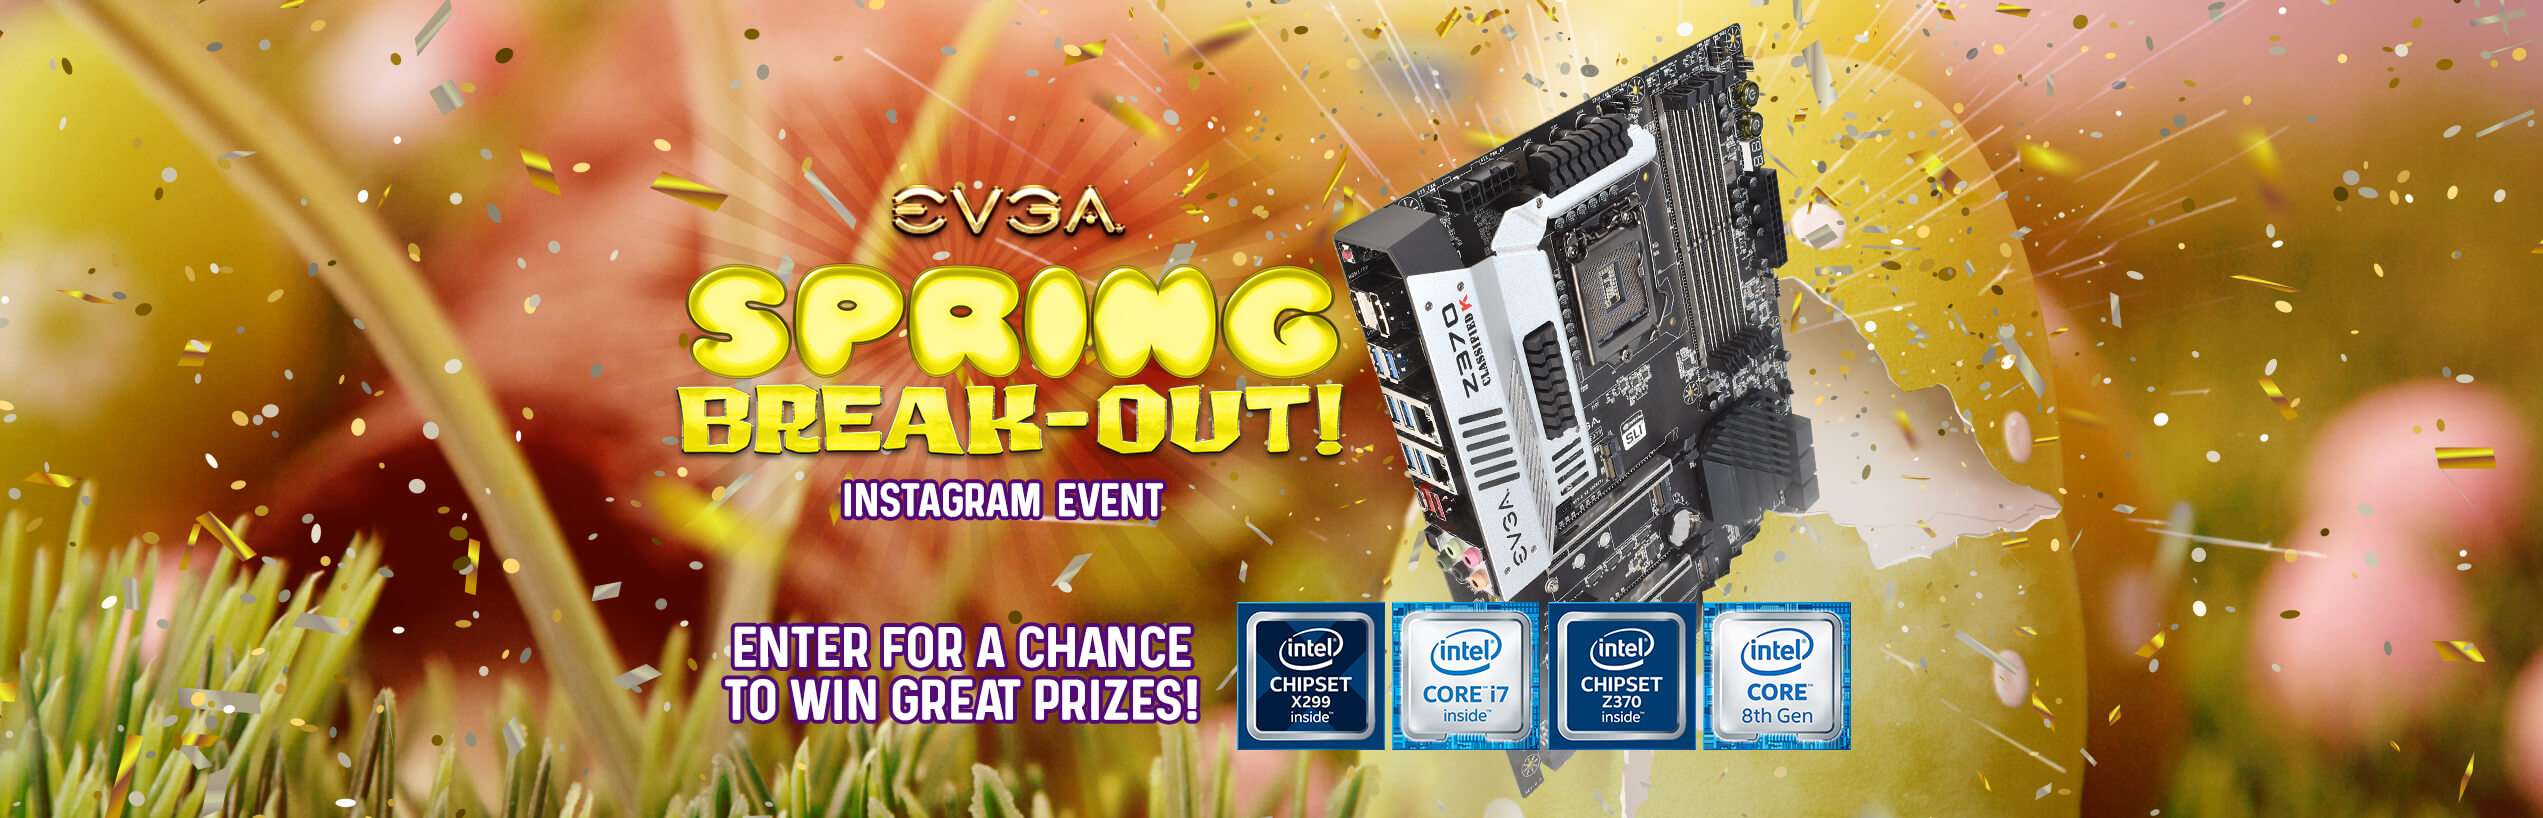 EVGA Spring Break-Out Instagram Event